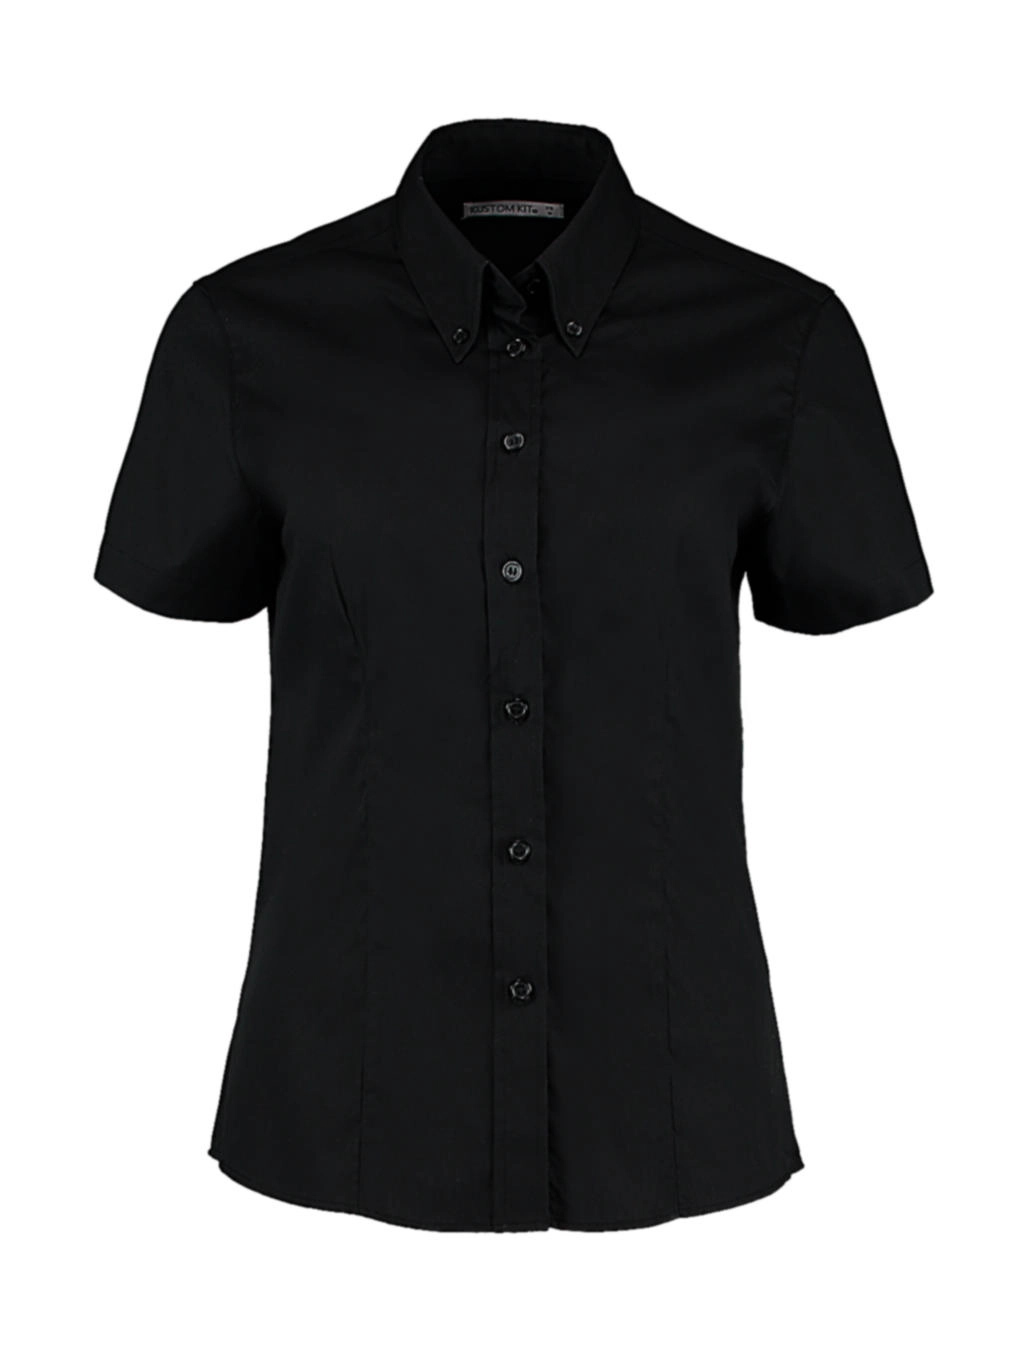 Women`s Tailored Fit Premium Oxford Shirt SSL zum Besticken und Bedrucken in der Farbe Black mit Ihren Logo, Schriftzug oder Motiv.